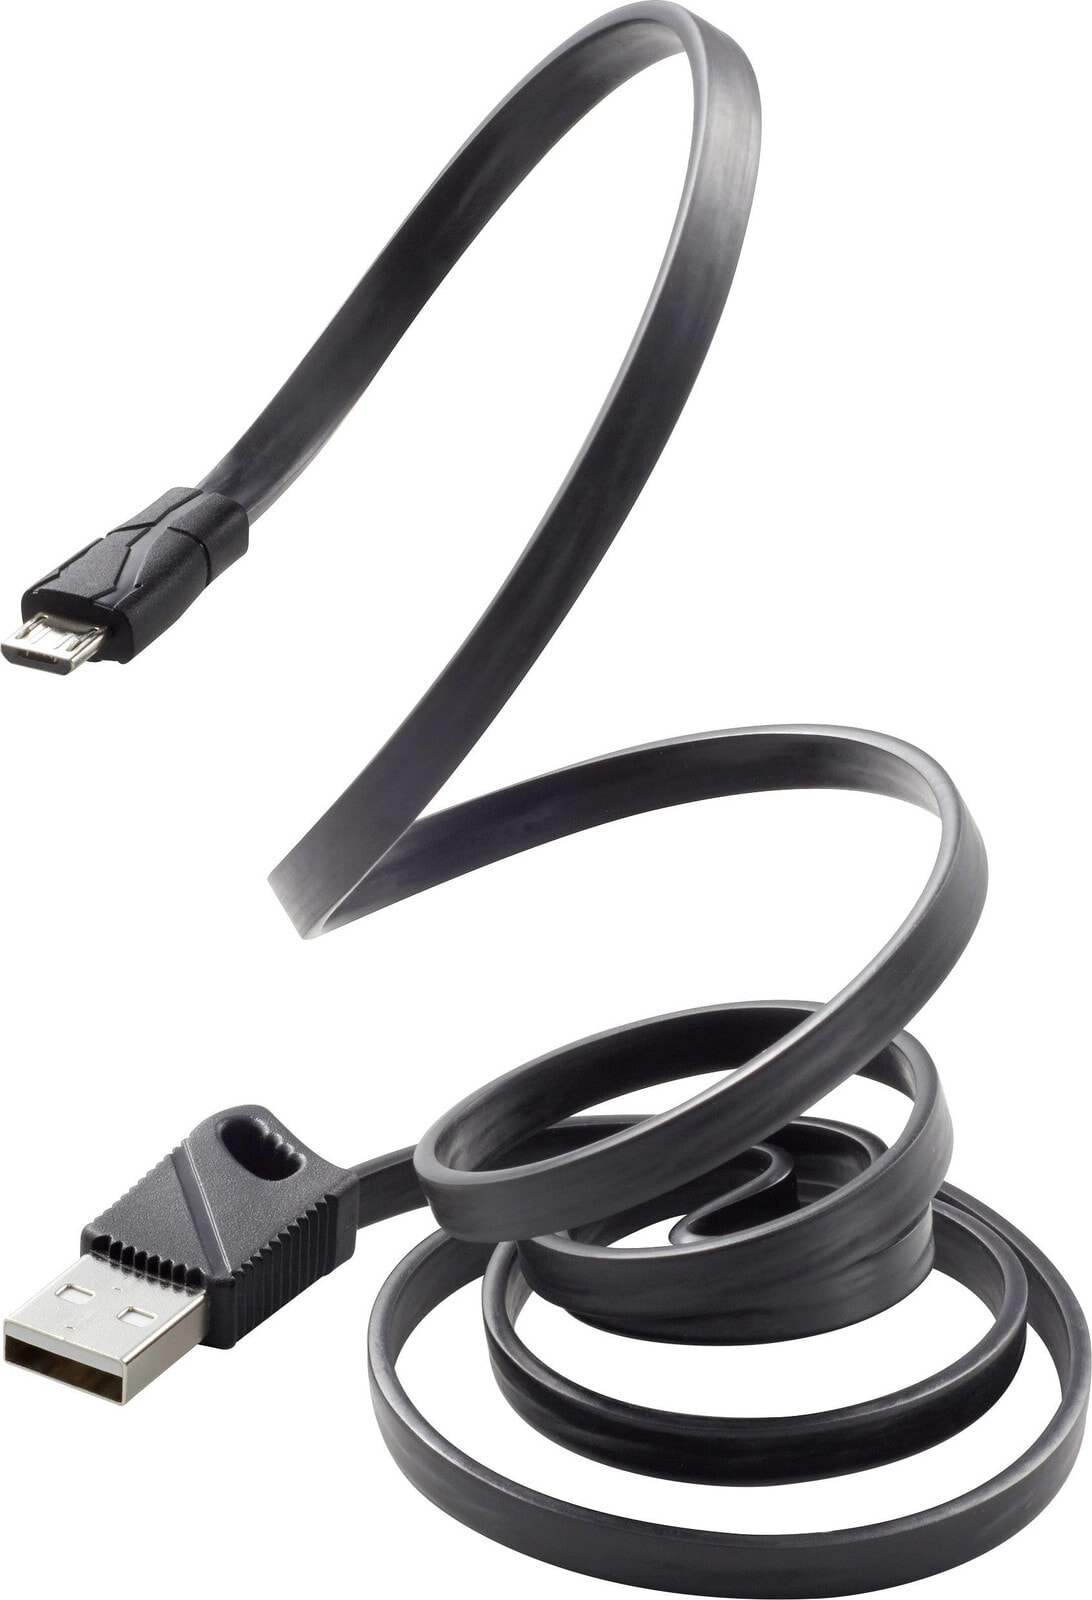 RF-3376010, 1 m, USB A, Micro-USB B, USB 2.0, 480 Mbit/s, Black